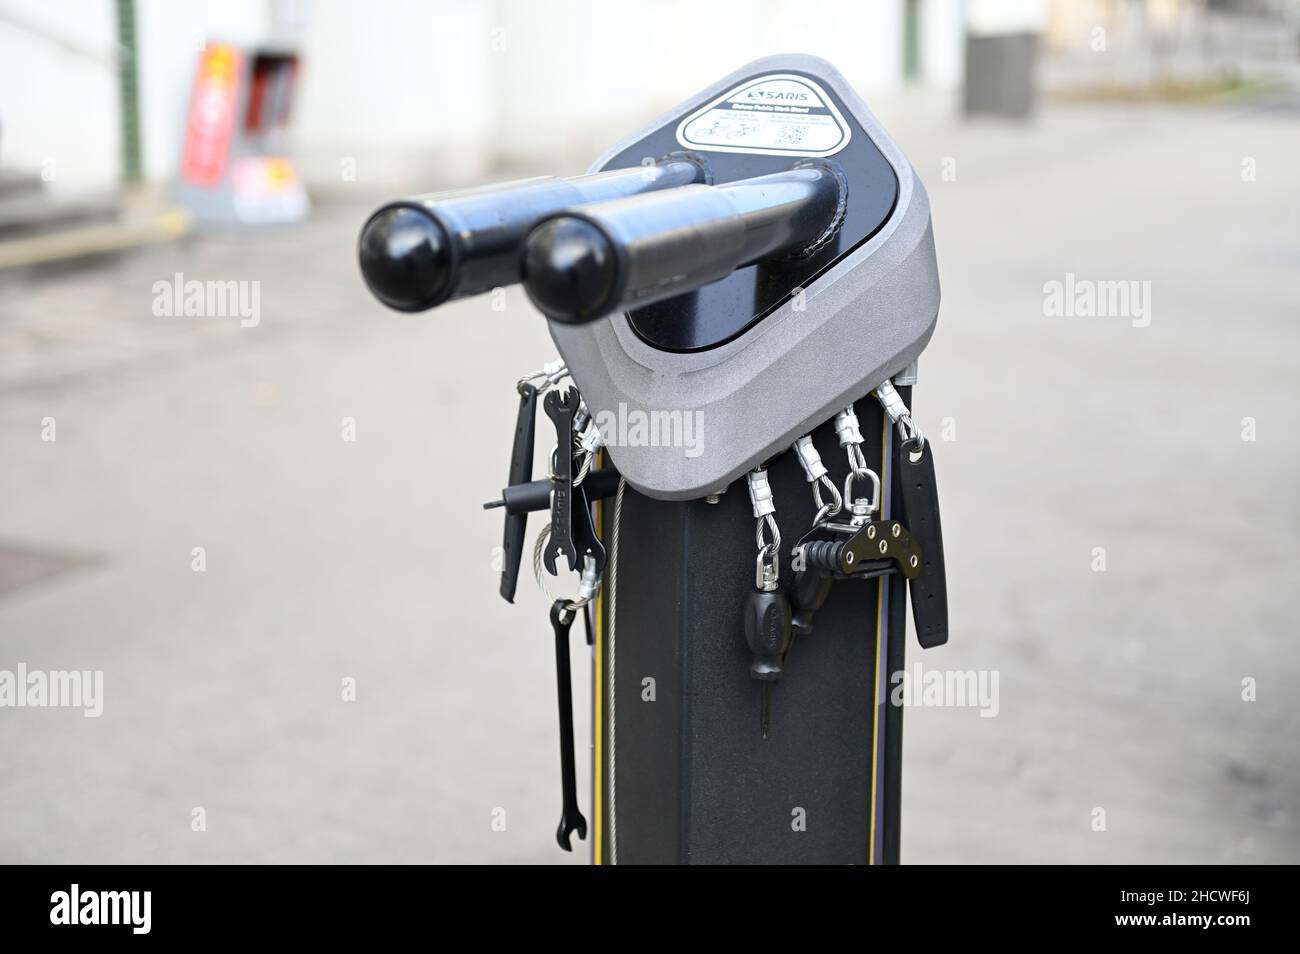 Vienne, Autriche.Support de réparation de vélo fixe Banque D'Images